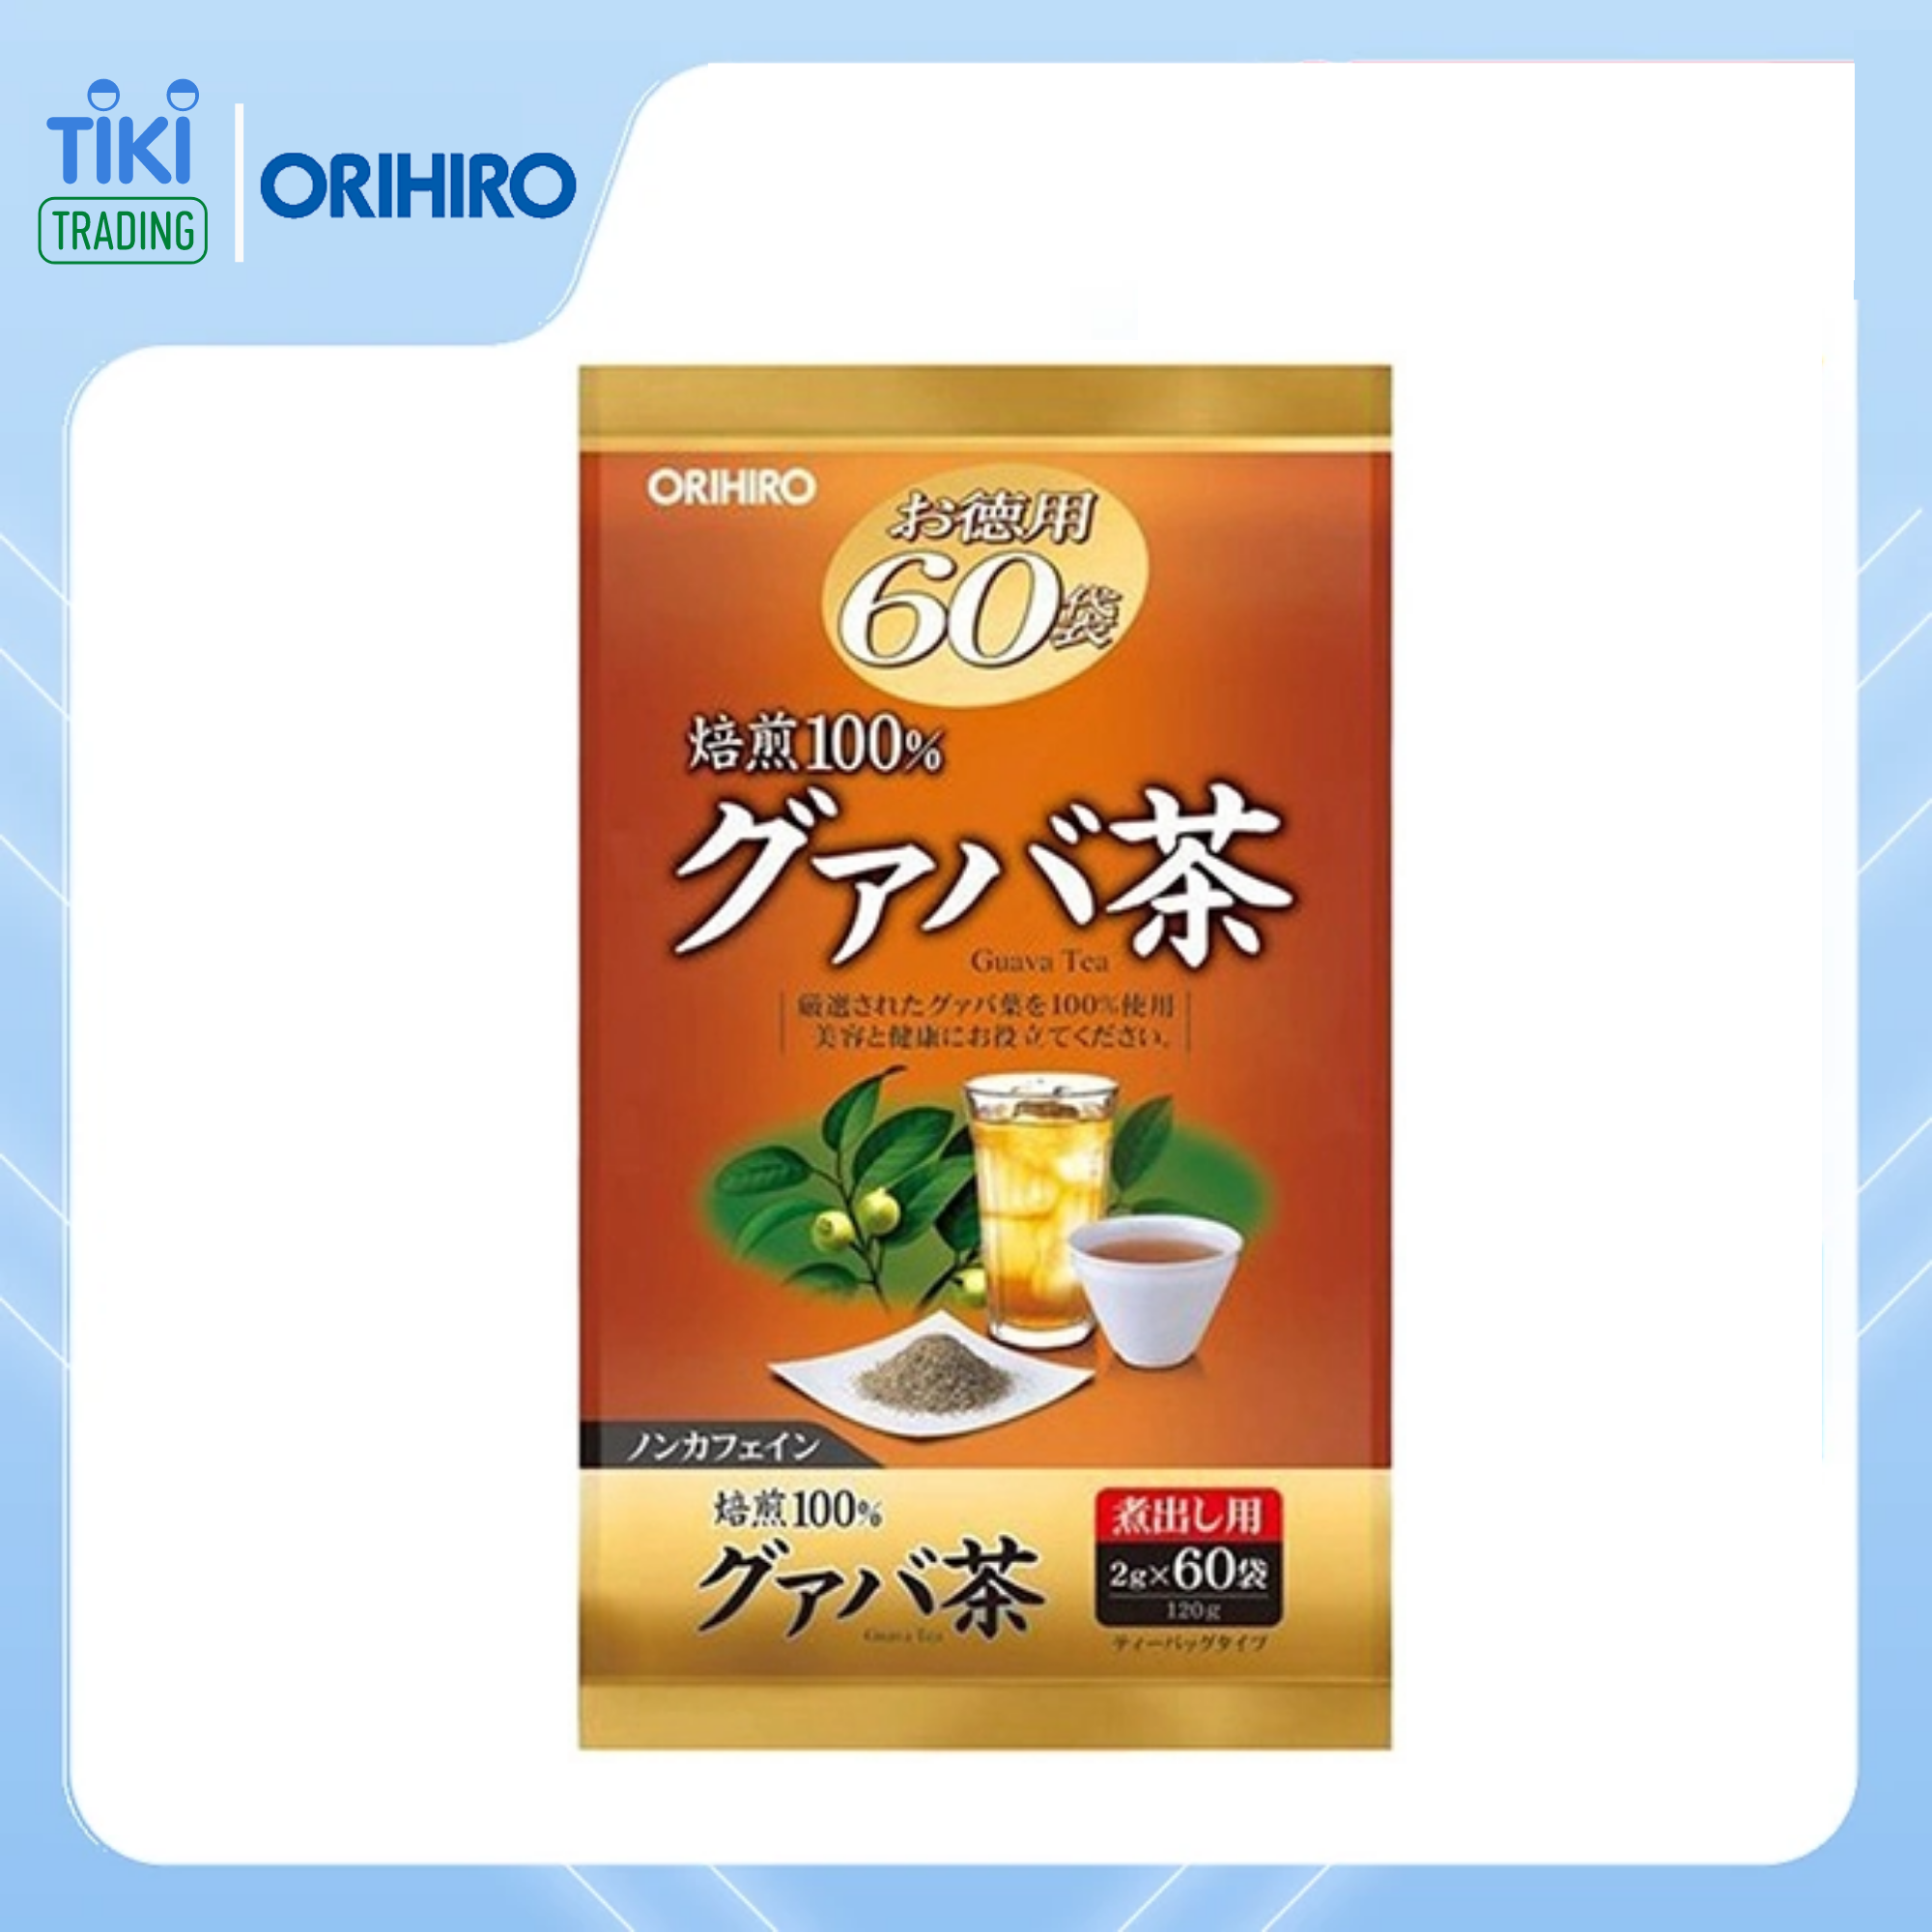  Trà ổi giảm cân Orihiro Nhật Bản (60 gói) tặng gói trà sữa hoặc cafe ngẫu nhiên